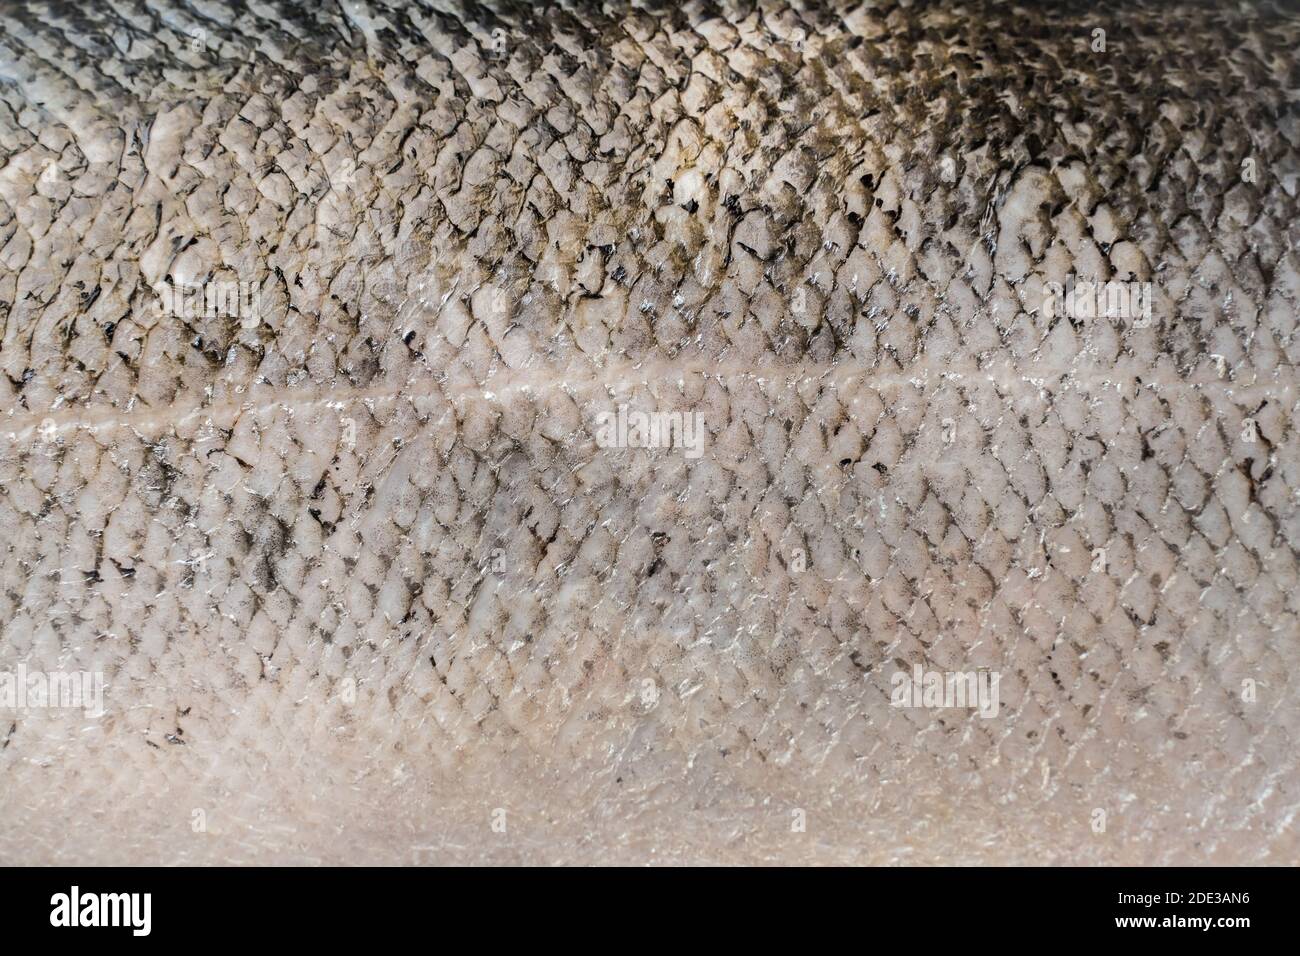 Frischer großer Lachs. Makroaufnahme mit Lachsschuppen. Stockfoto